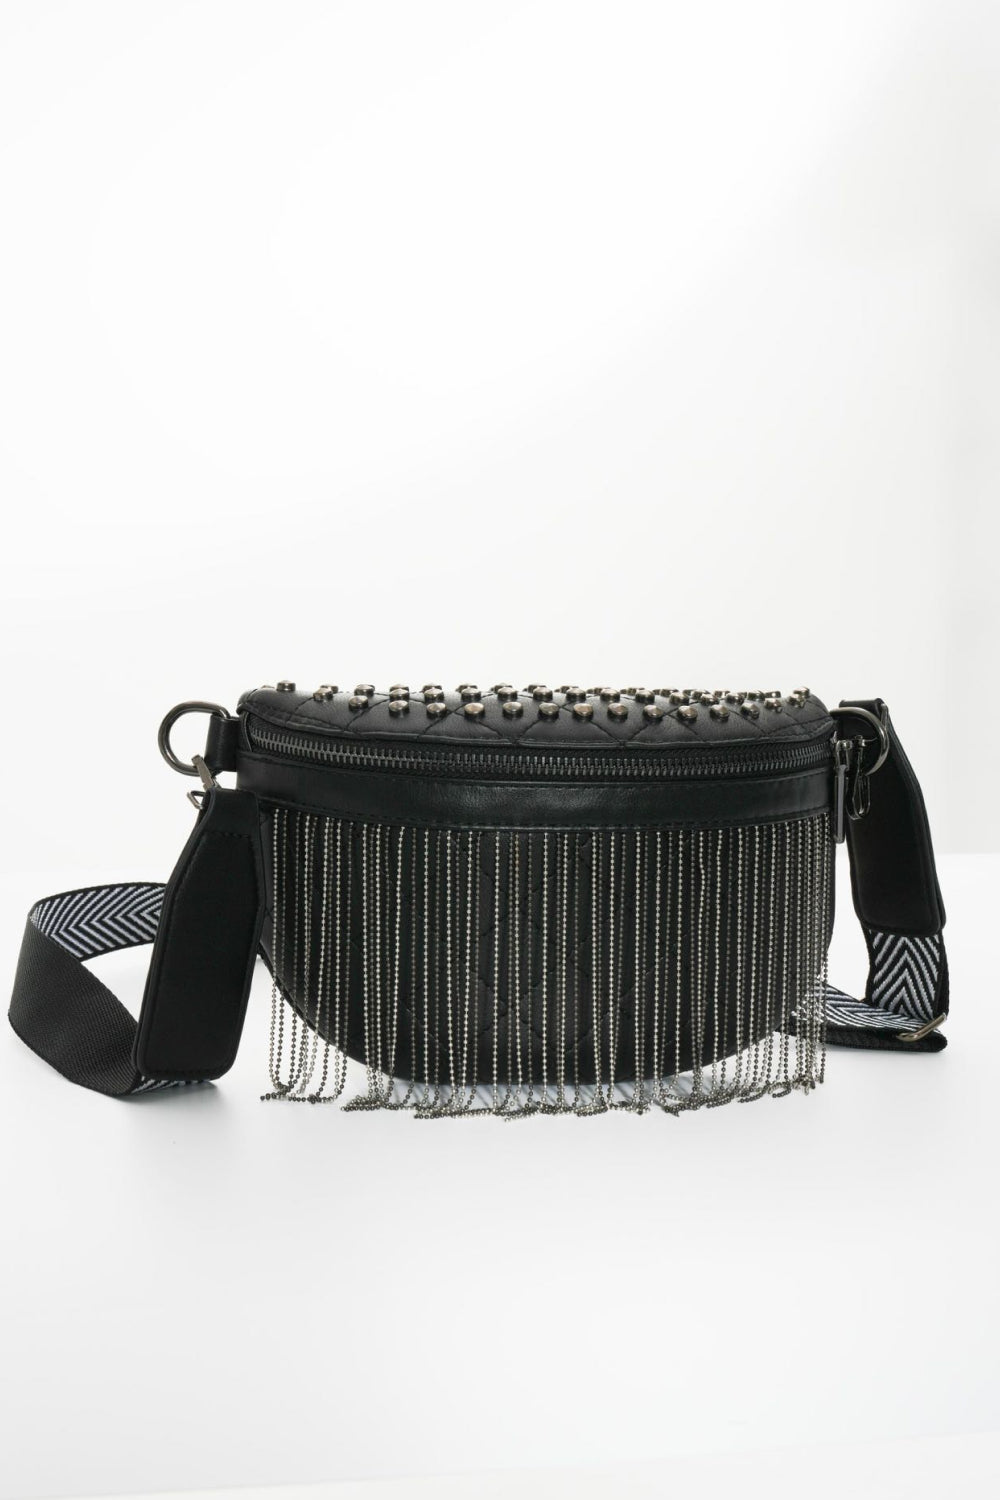 PU Leather Studded Sling Bag with Fringes - Handbag - FITGGINS